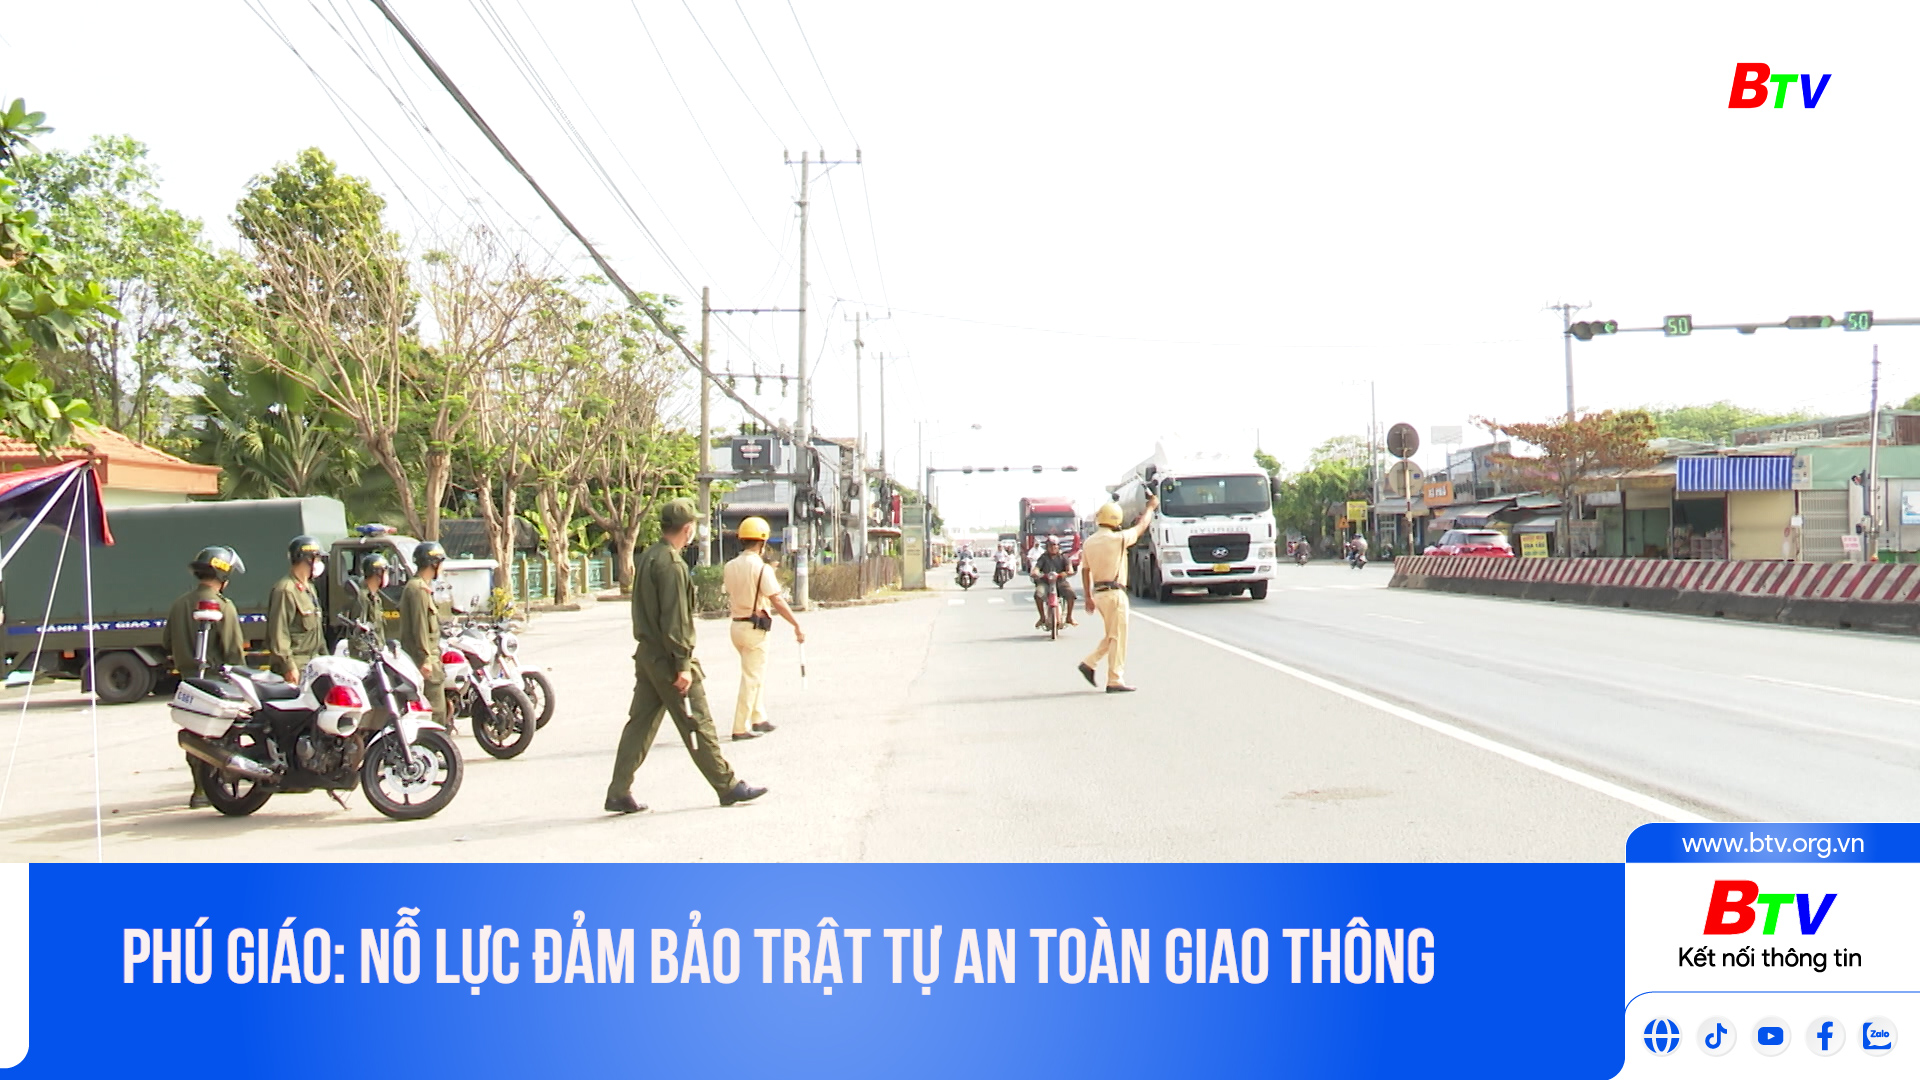 Phú Giáo: Nỗ lực đảm bảo trật tự an toàn giao thông